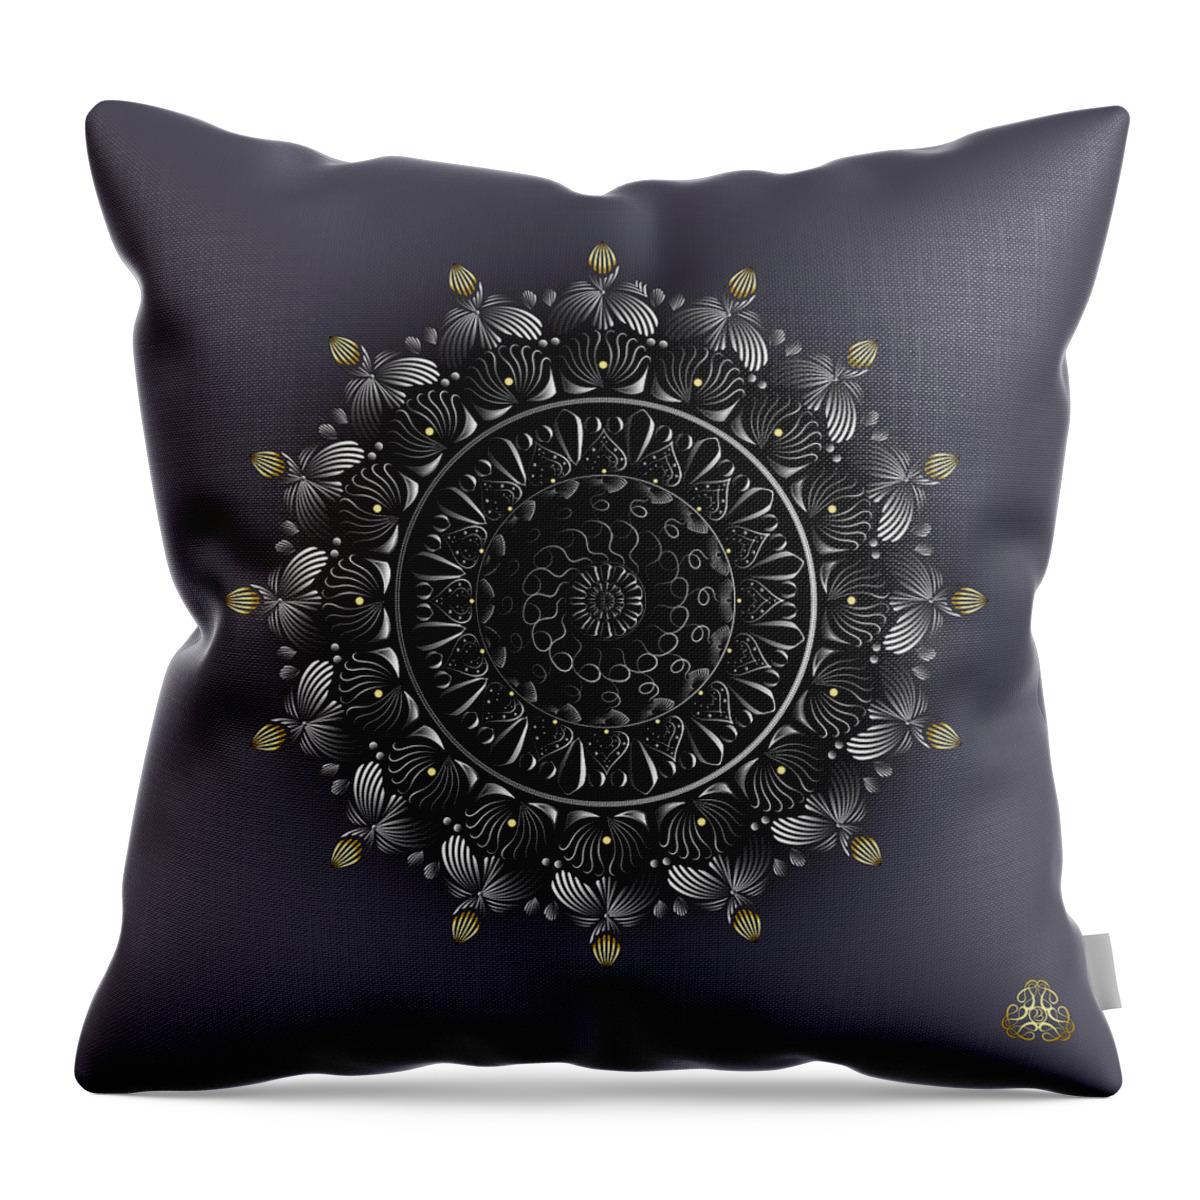 Mandala Throw Pillow featuring the digital art Kuklos No 4342 by Alan Bennington